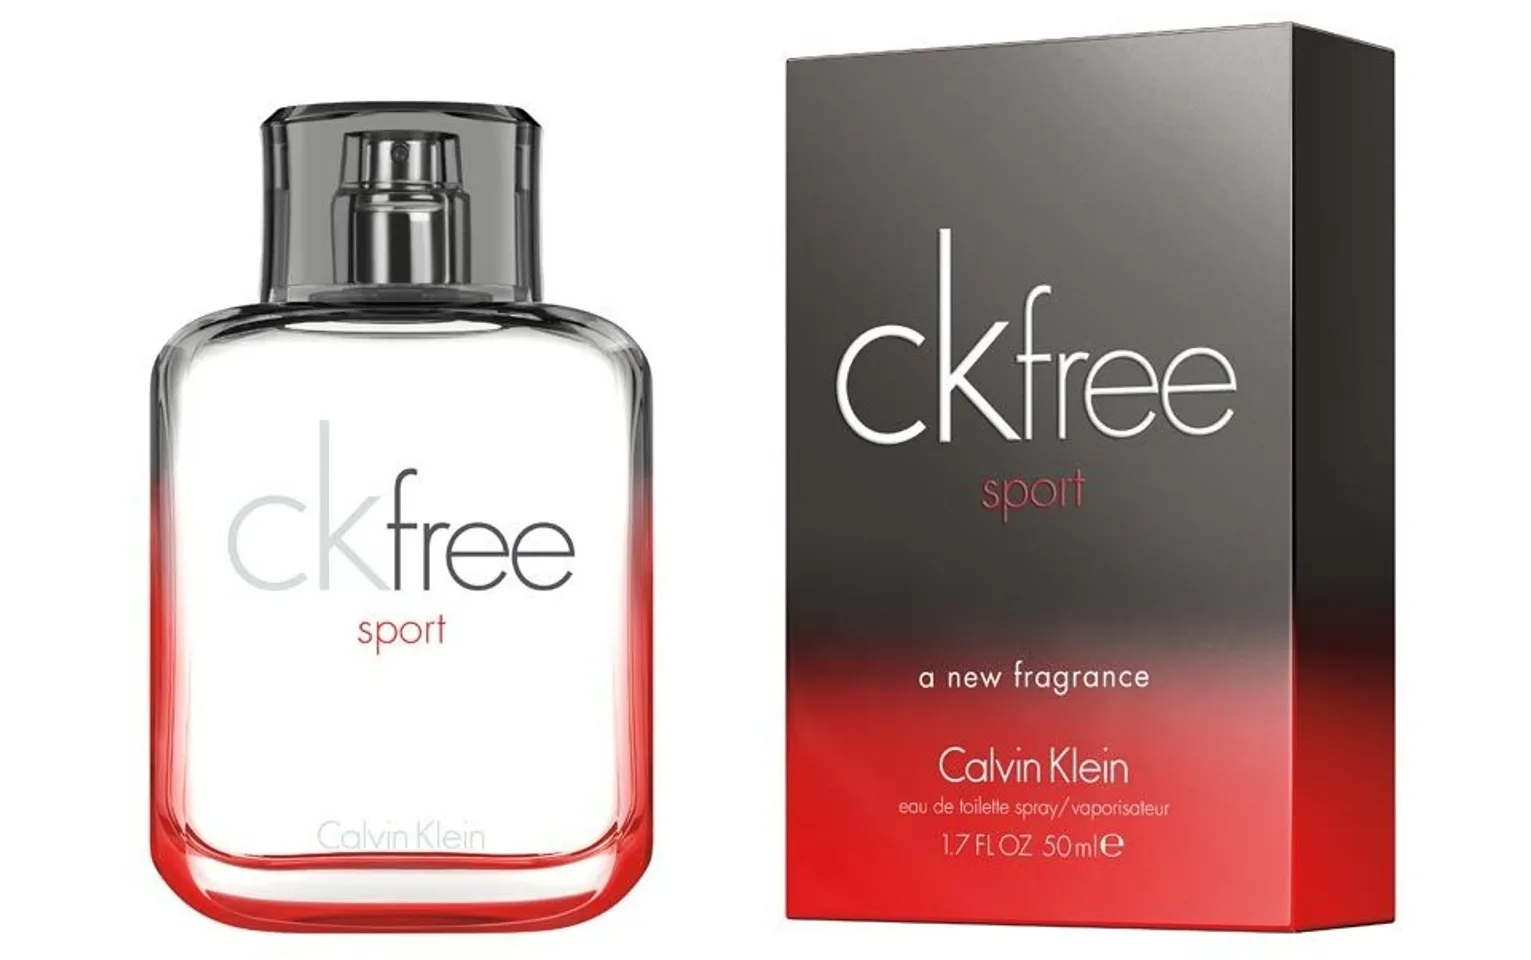 Nước hoa Calvin Klein (CK) CK free năng động, 60 ml